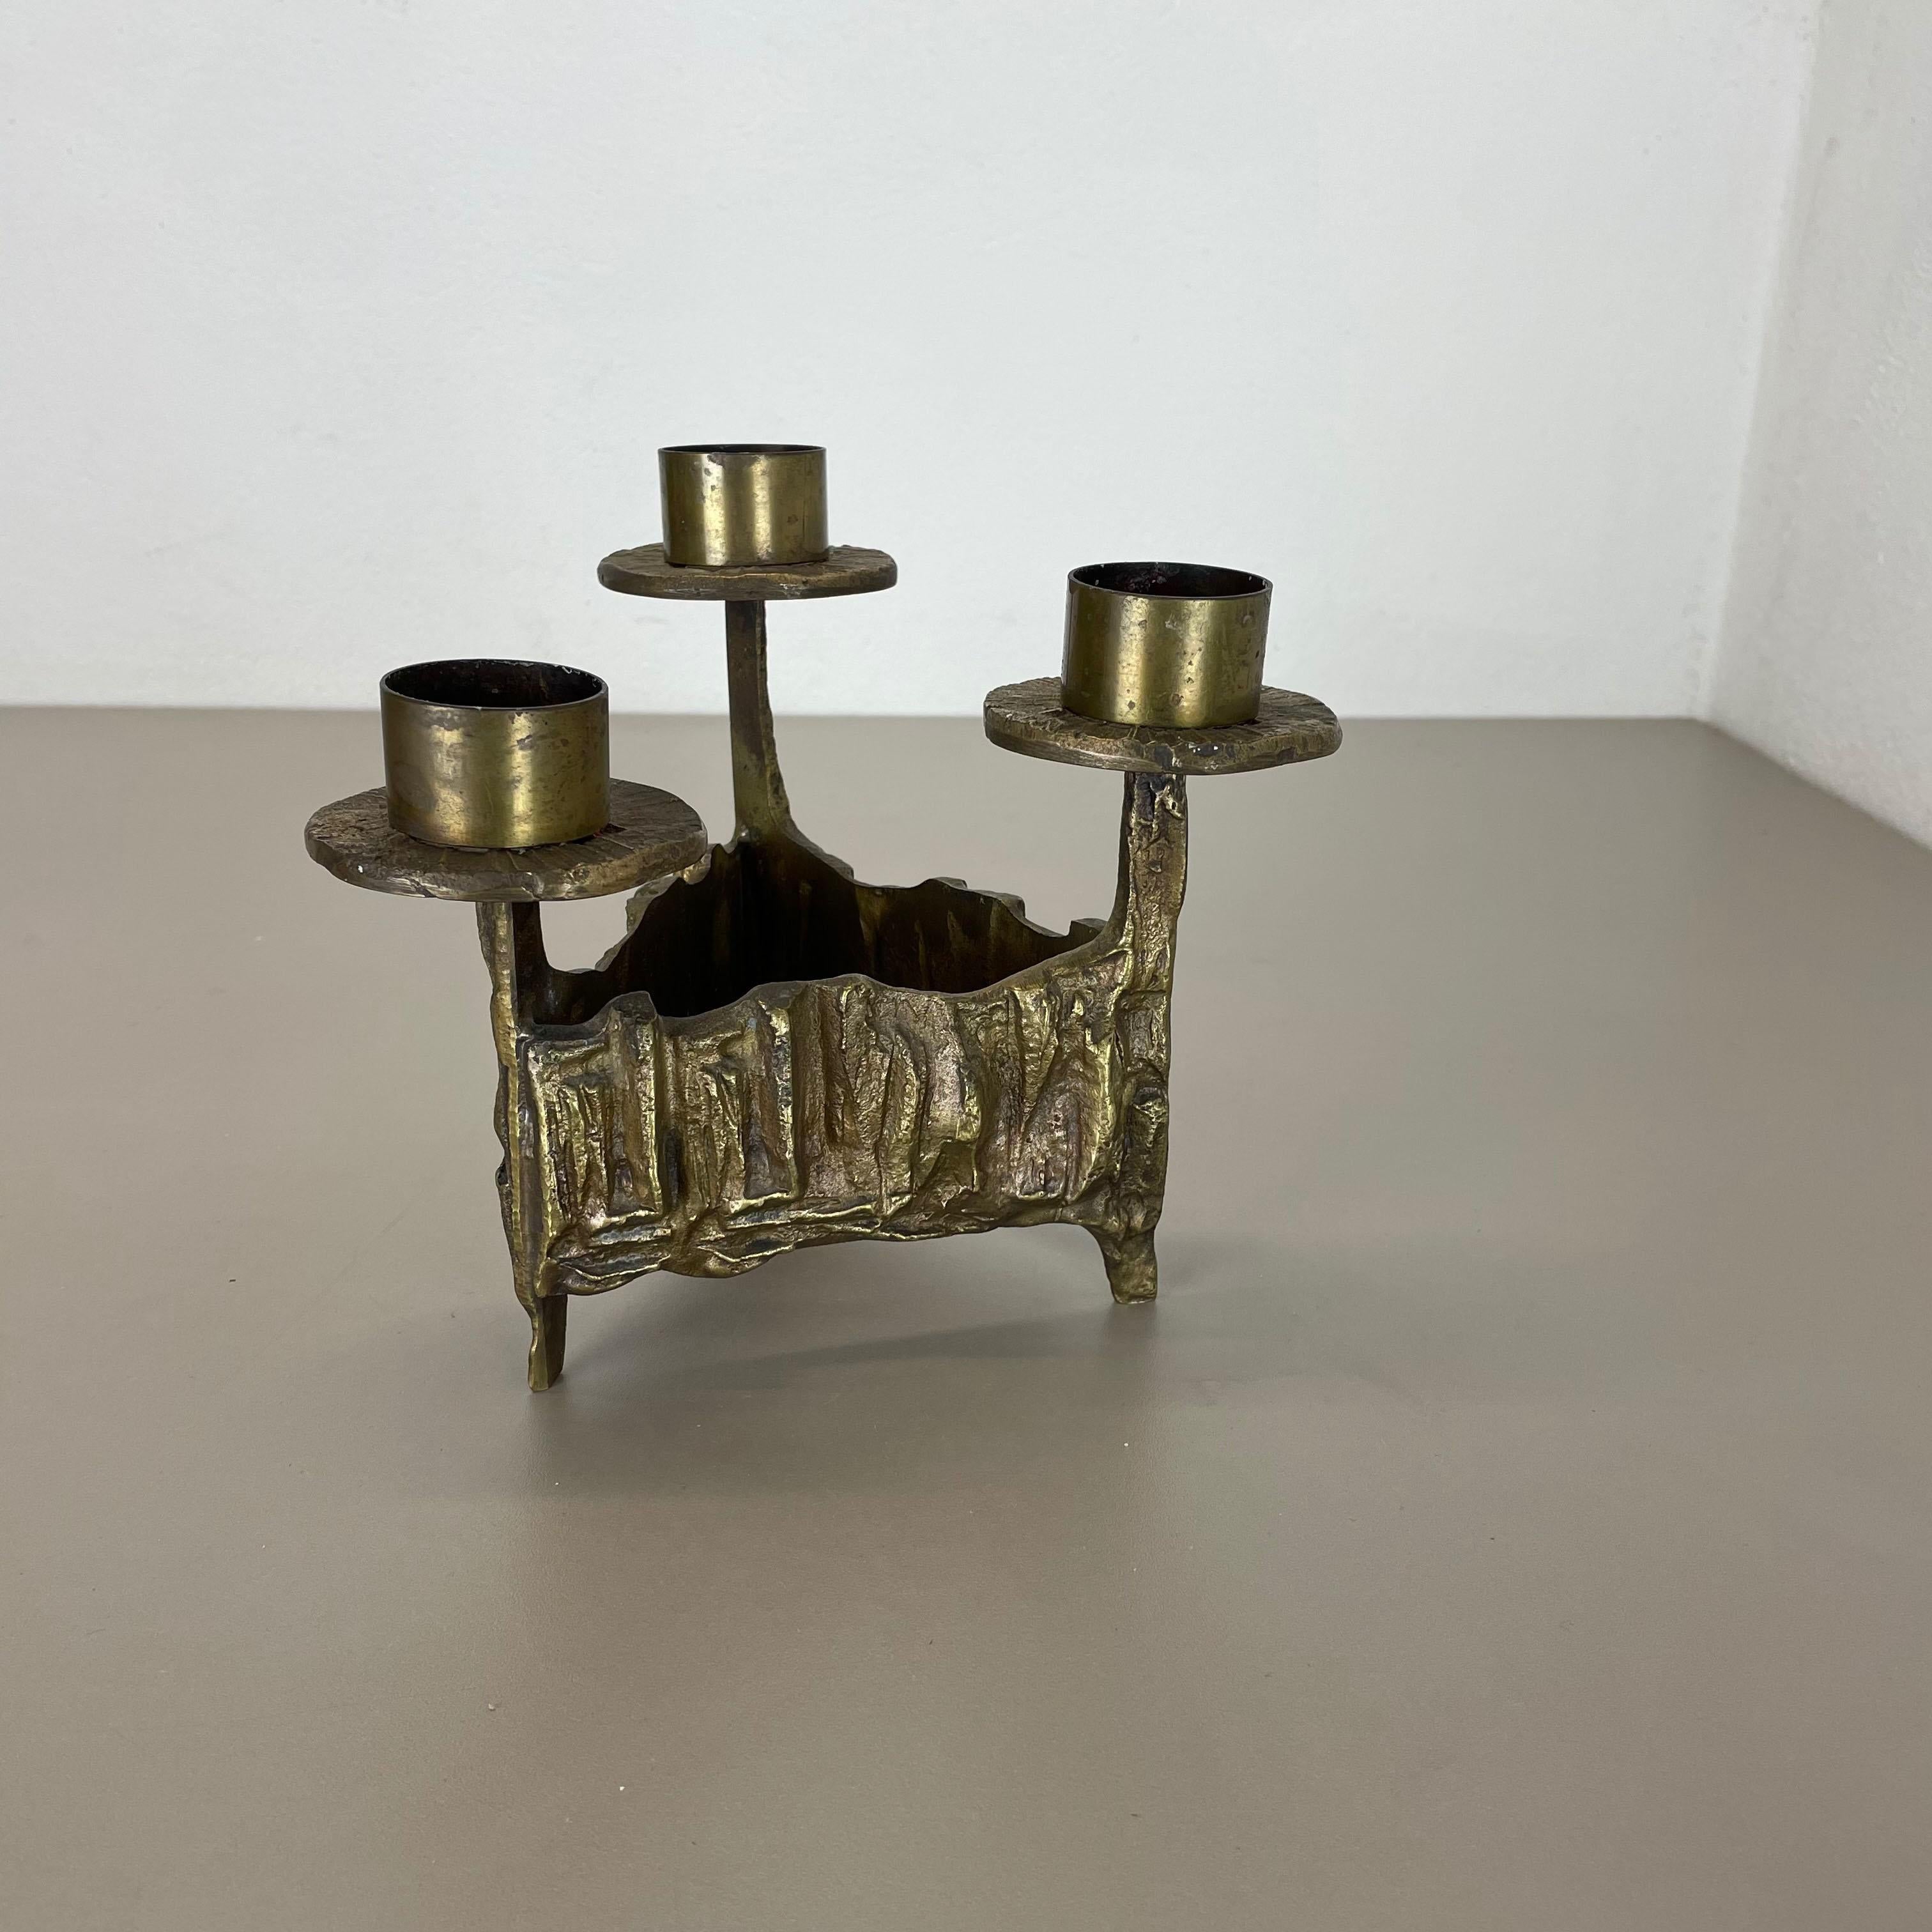 Scandinavian Modern Modernist Vintage Sculptural Brutalist Brass Metal Candleholder, France, 1970s For Sale